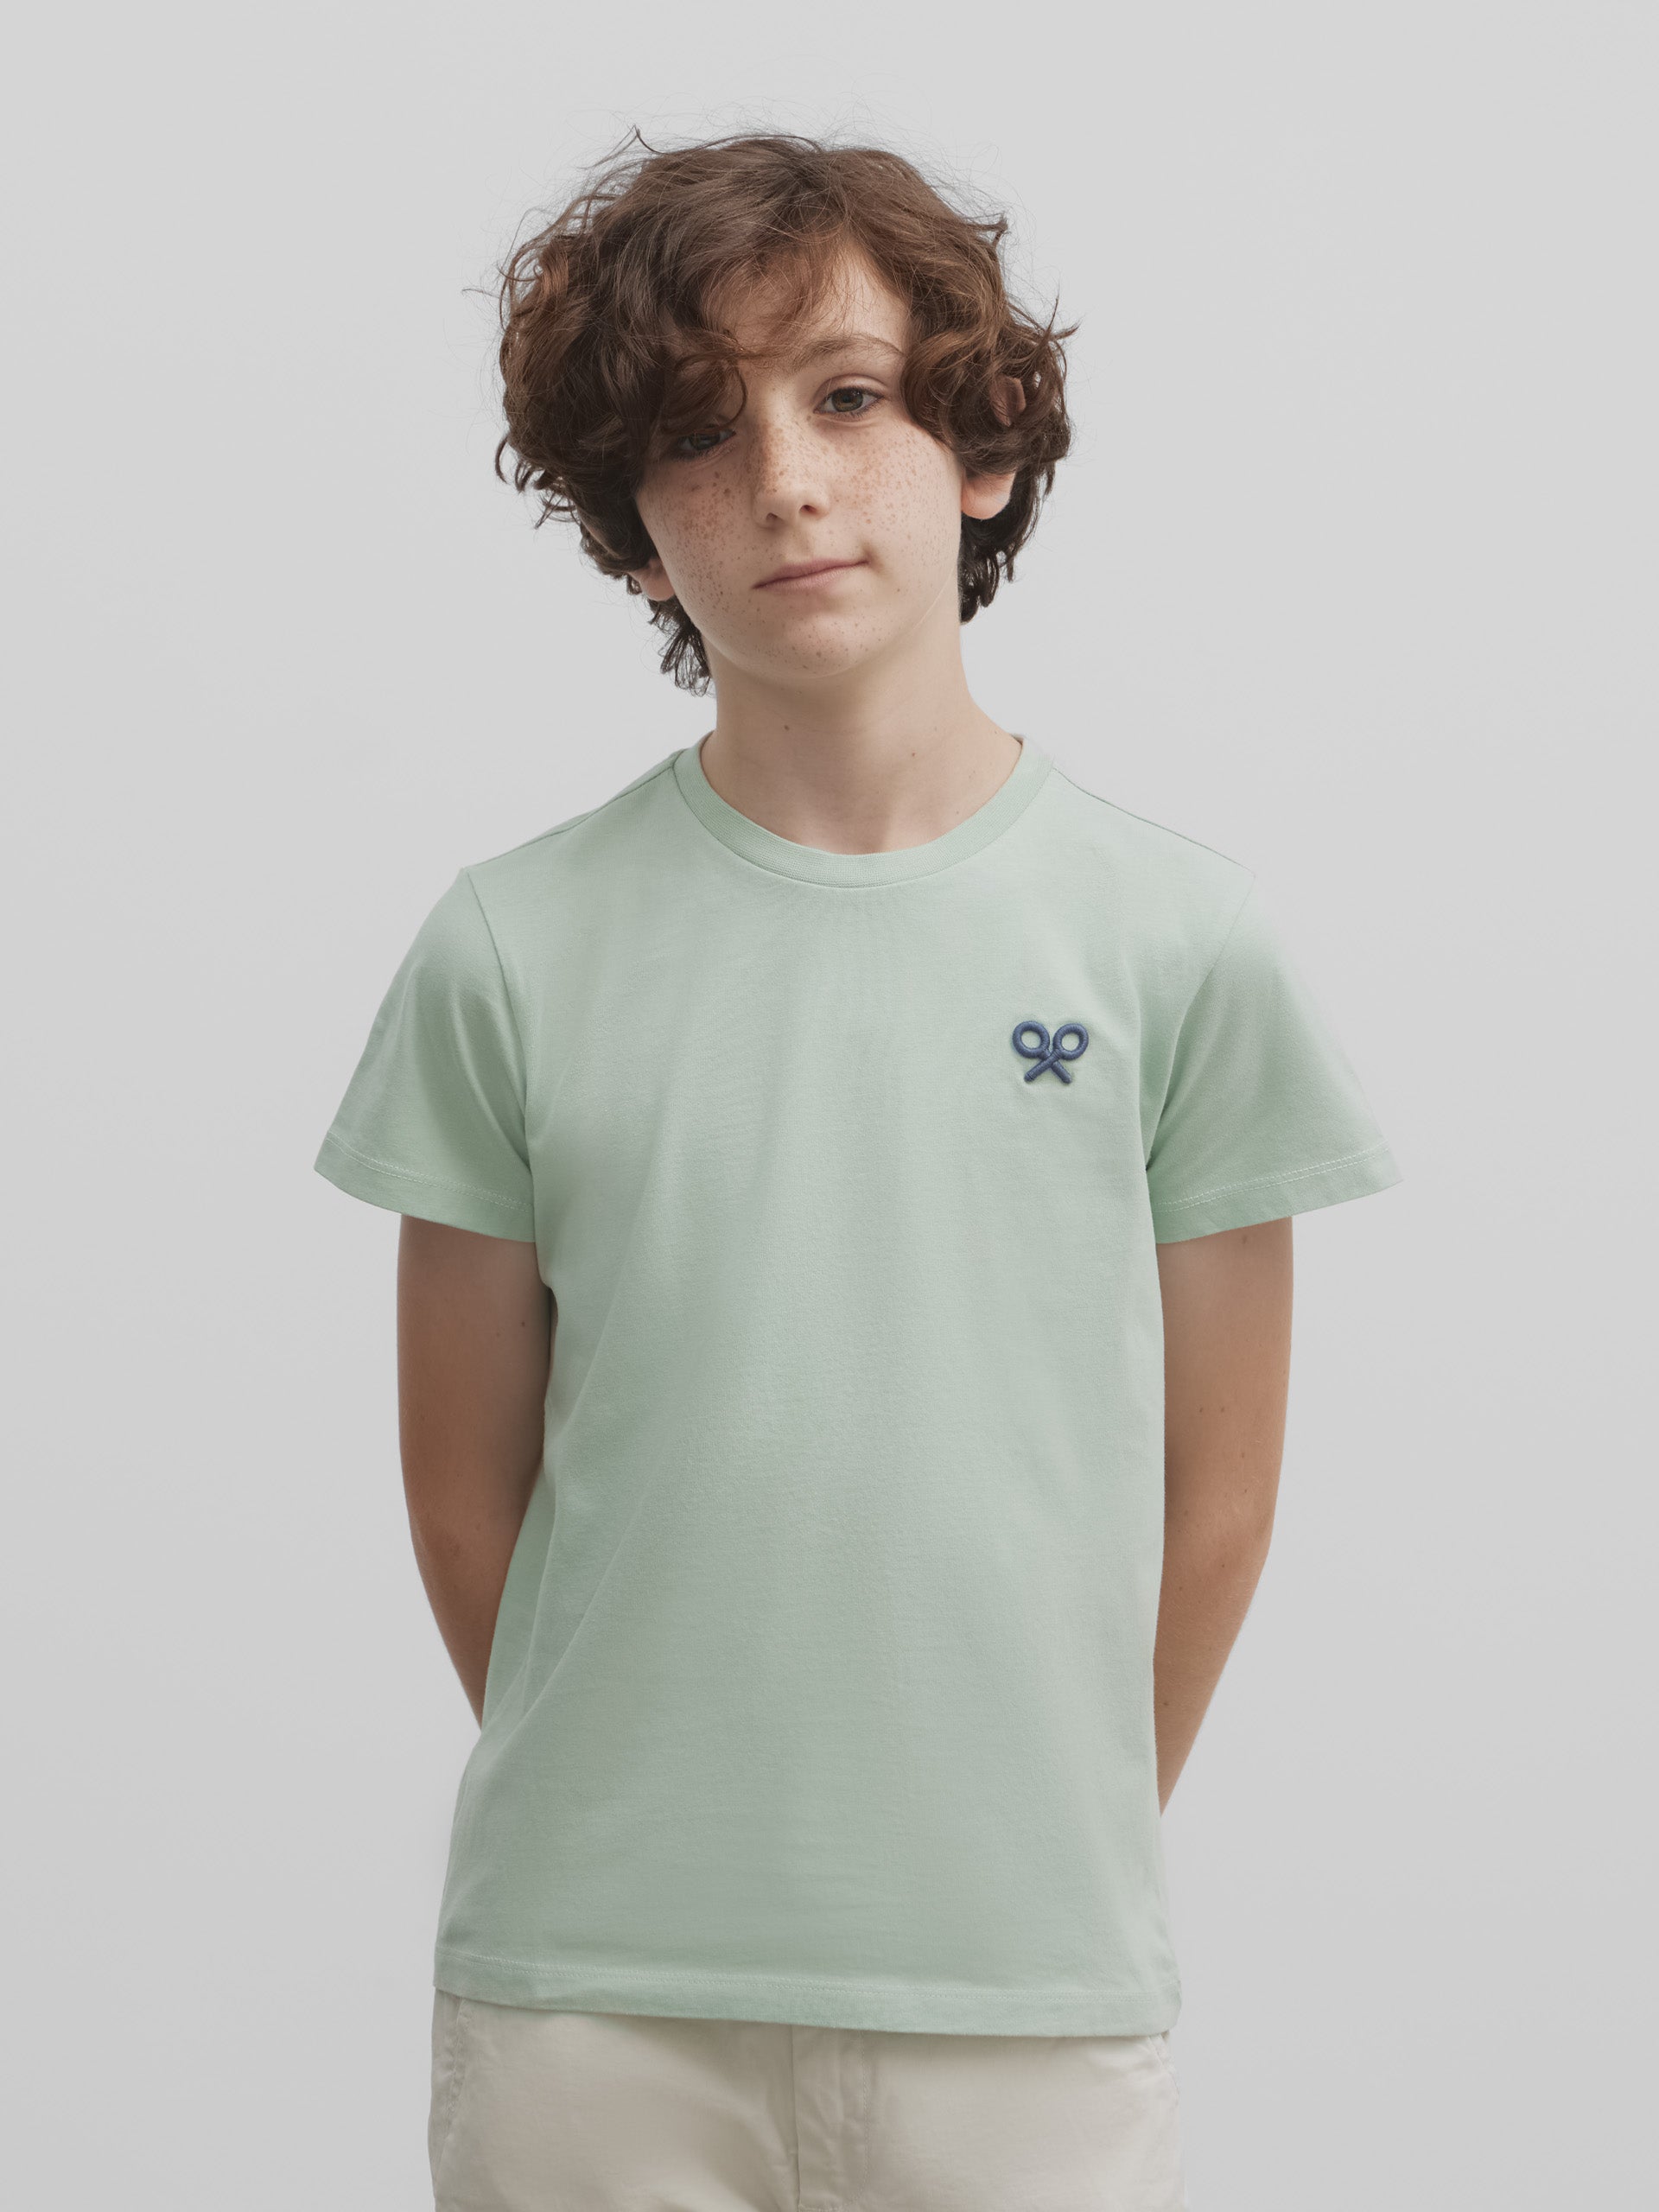 Silbon summer green kids t-shirt